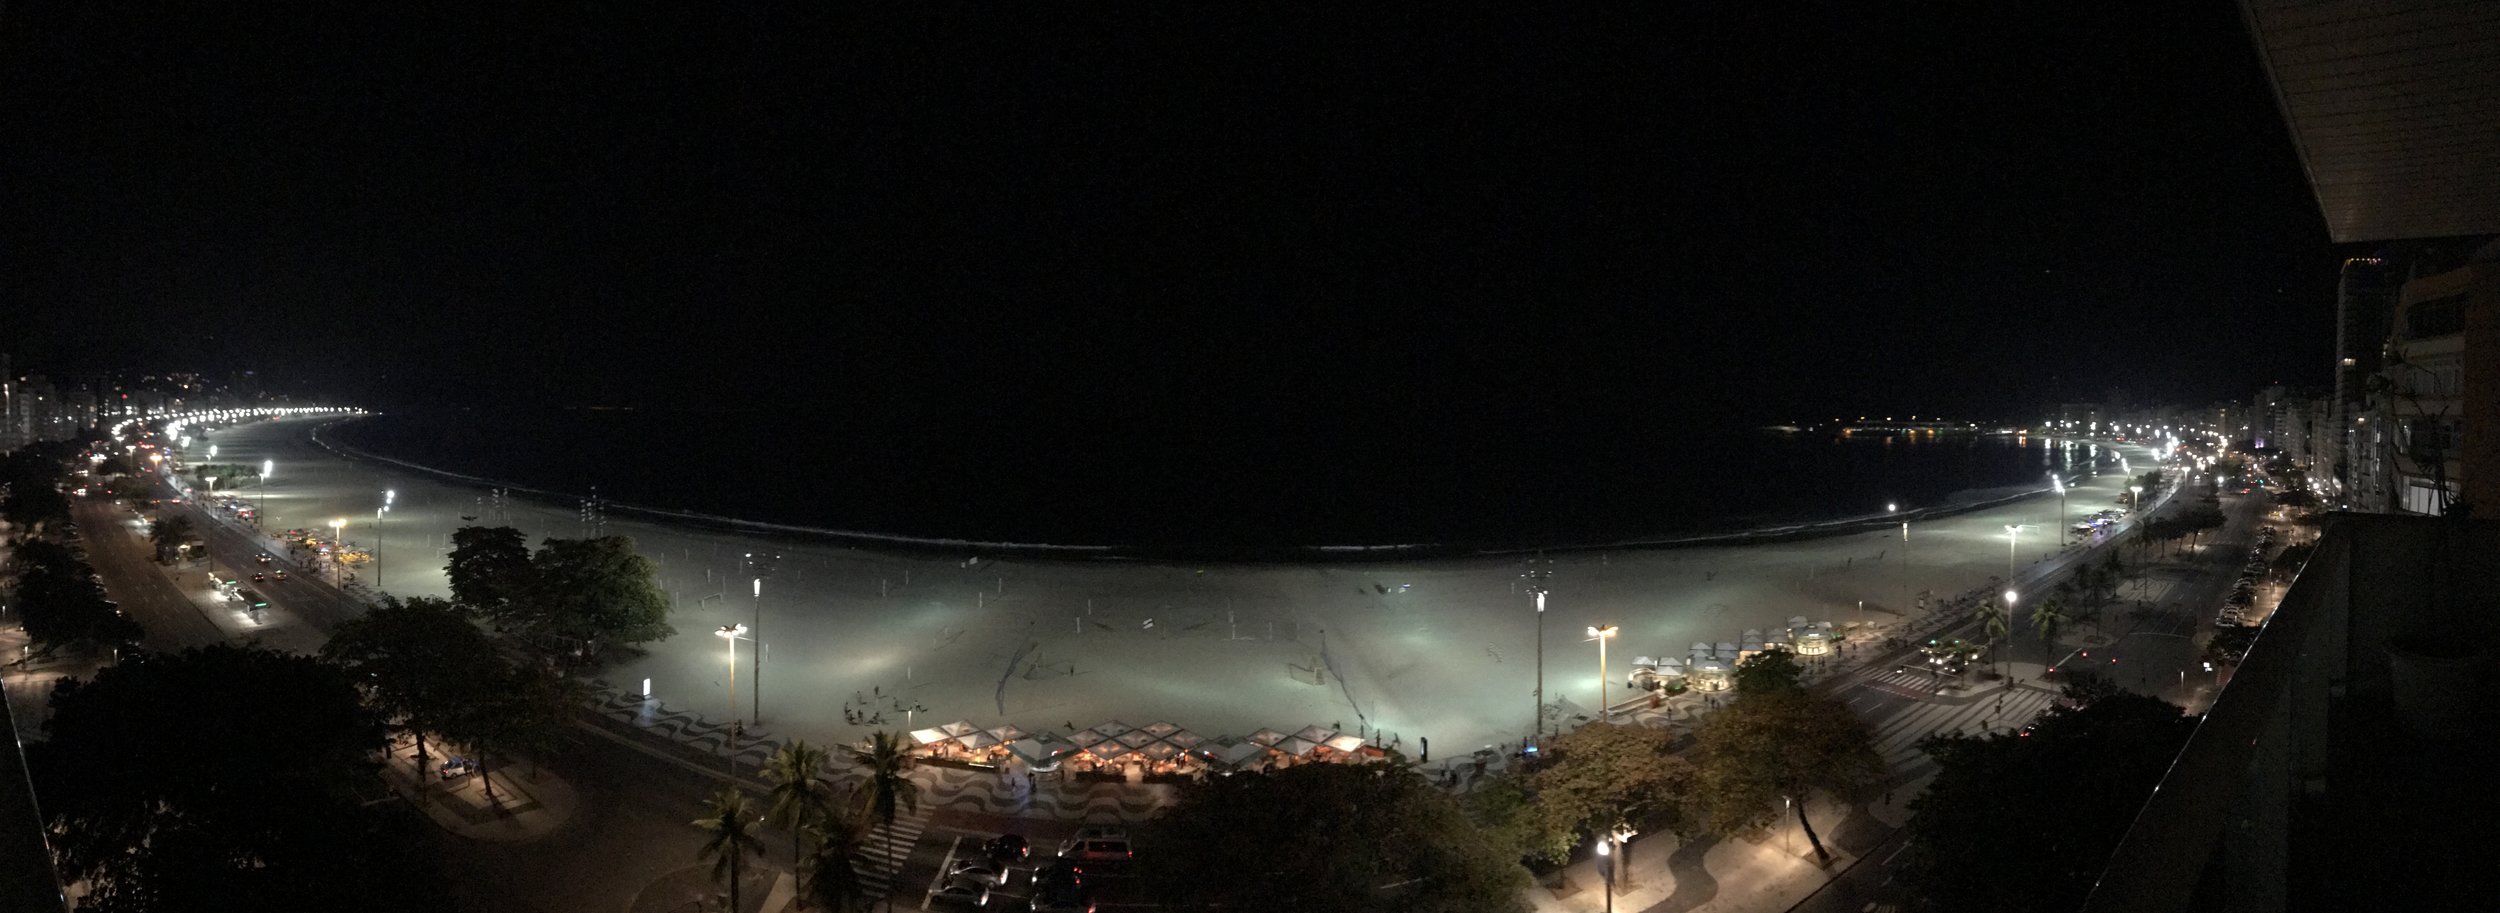  Vista nocturna de Copacabana desde el balcón 